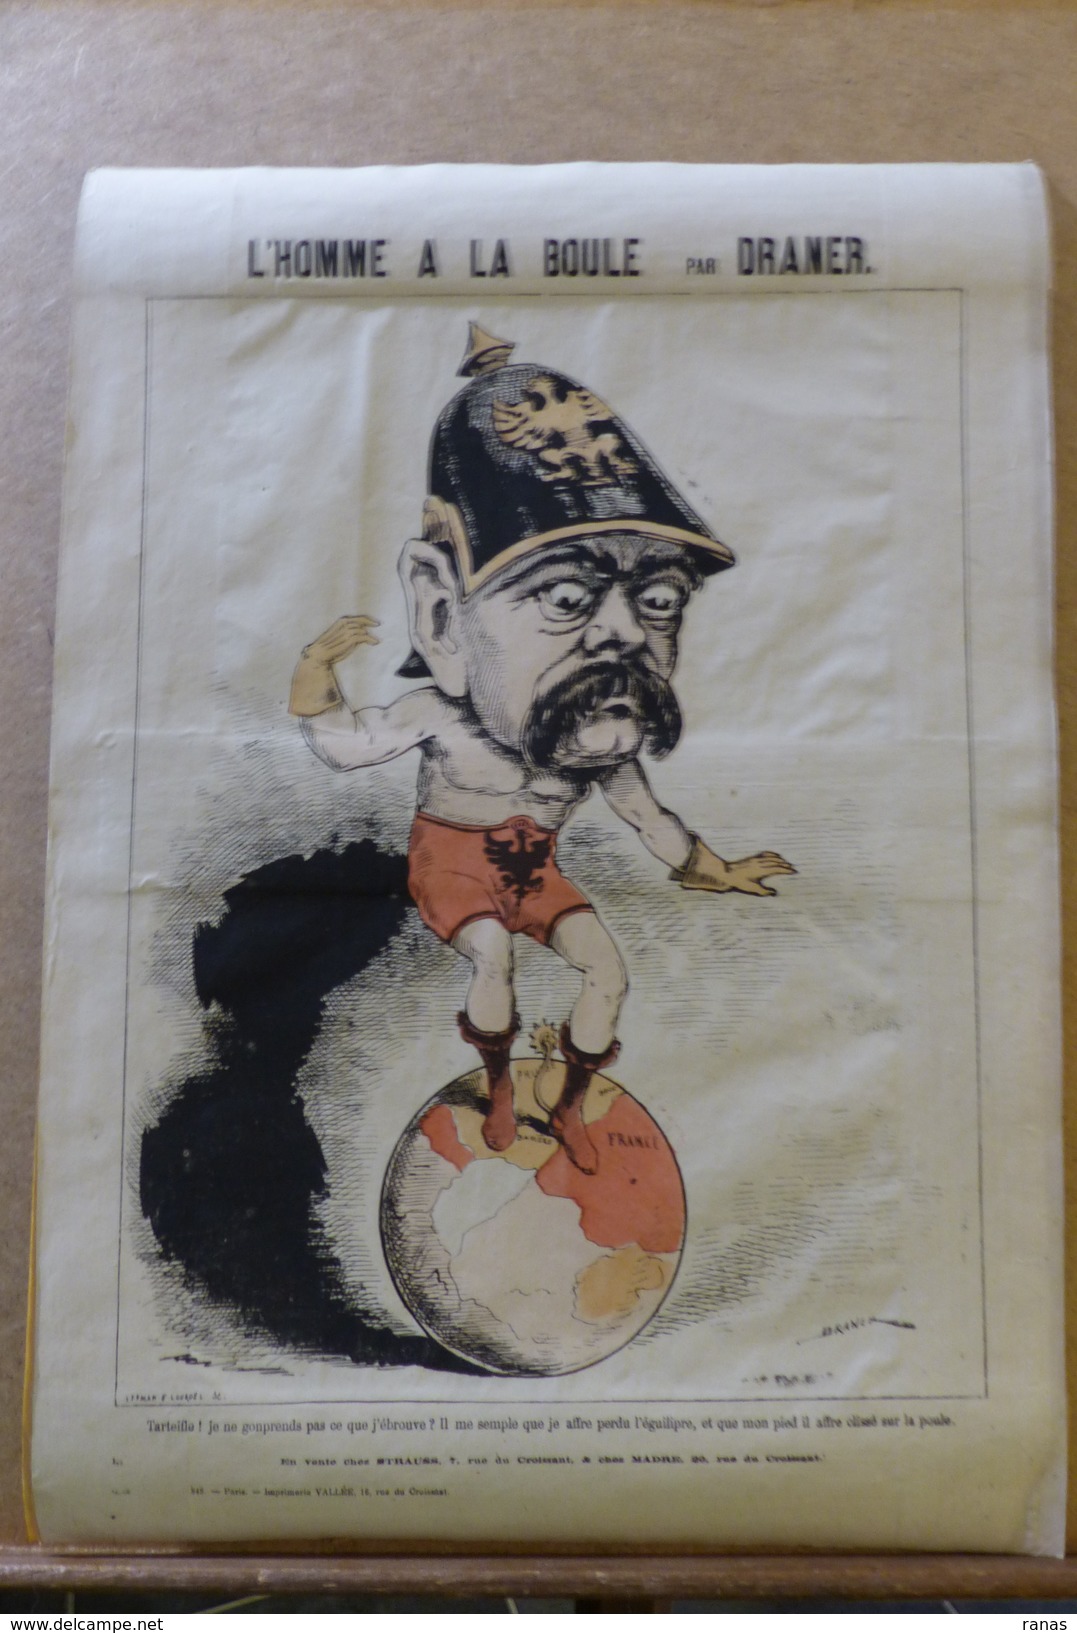 Estampe Gravure Satirique Caricature D'époque 1870 Bismarck Par DRANER Planisphère 43,5 X 31 - Stiche & Gravuren